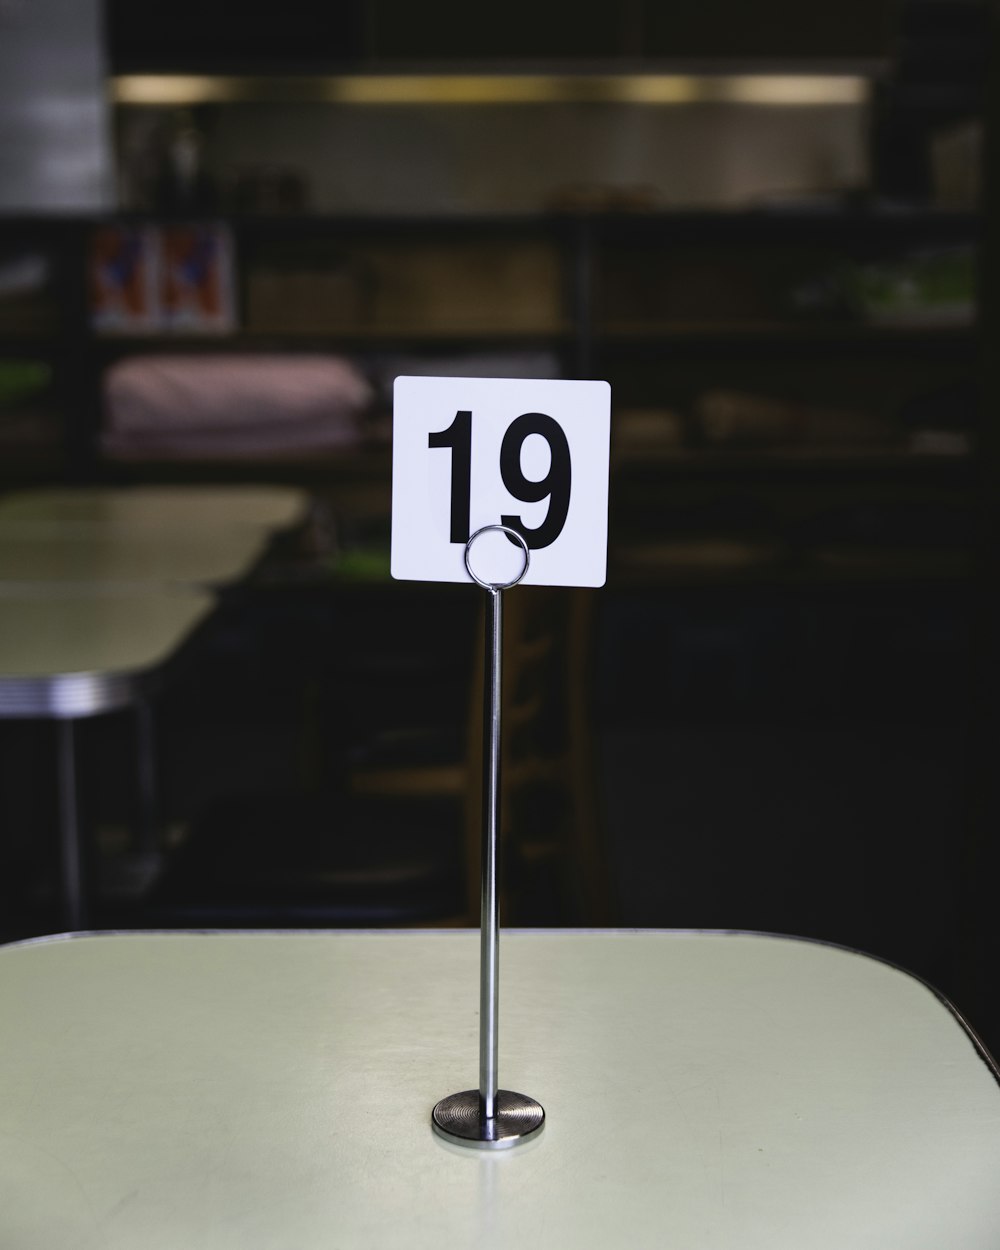 Tisch Nummer 19 auf dem Tisch im Raum